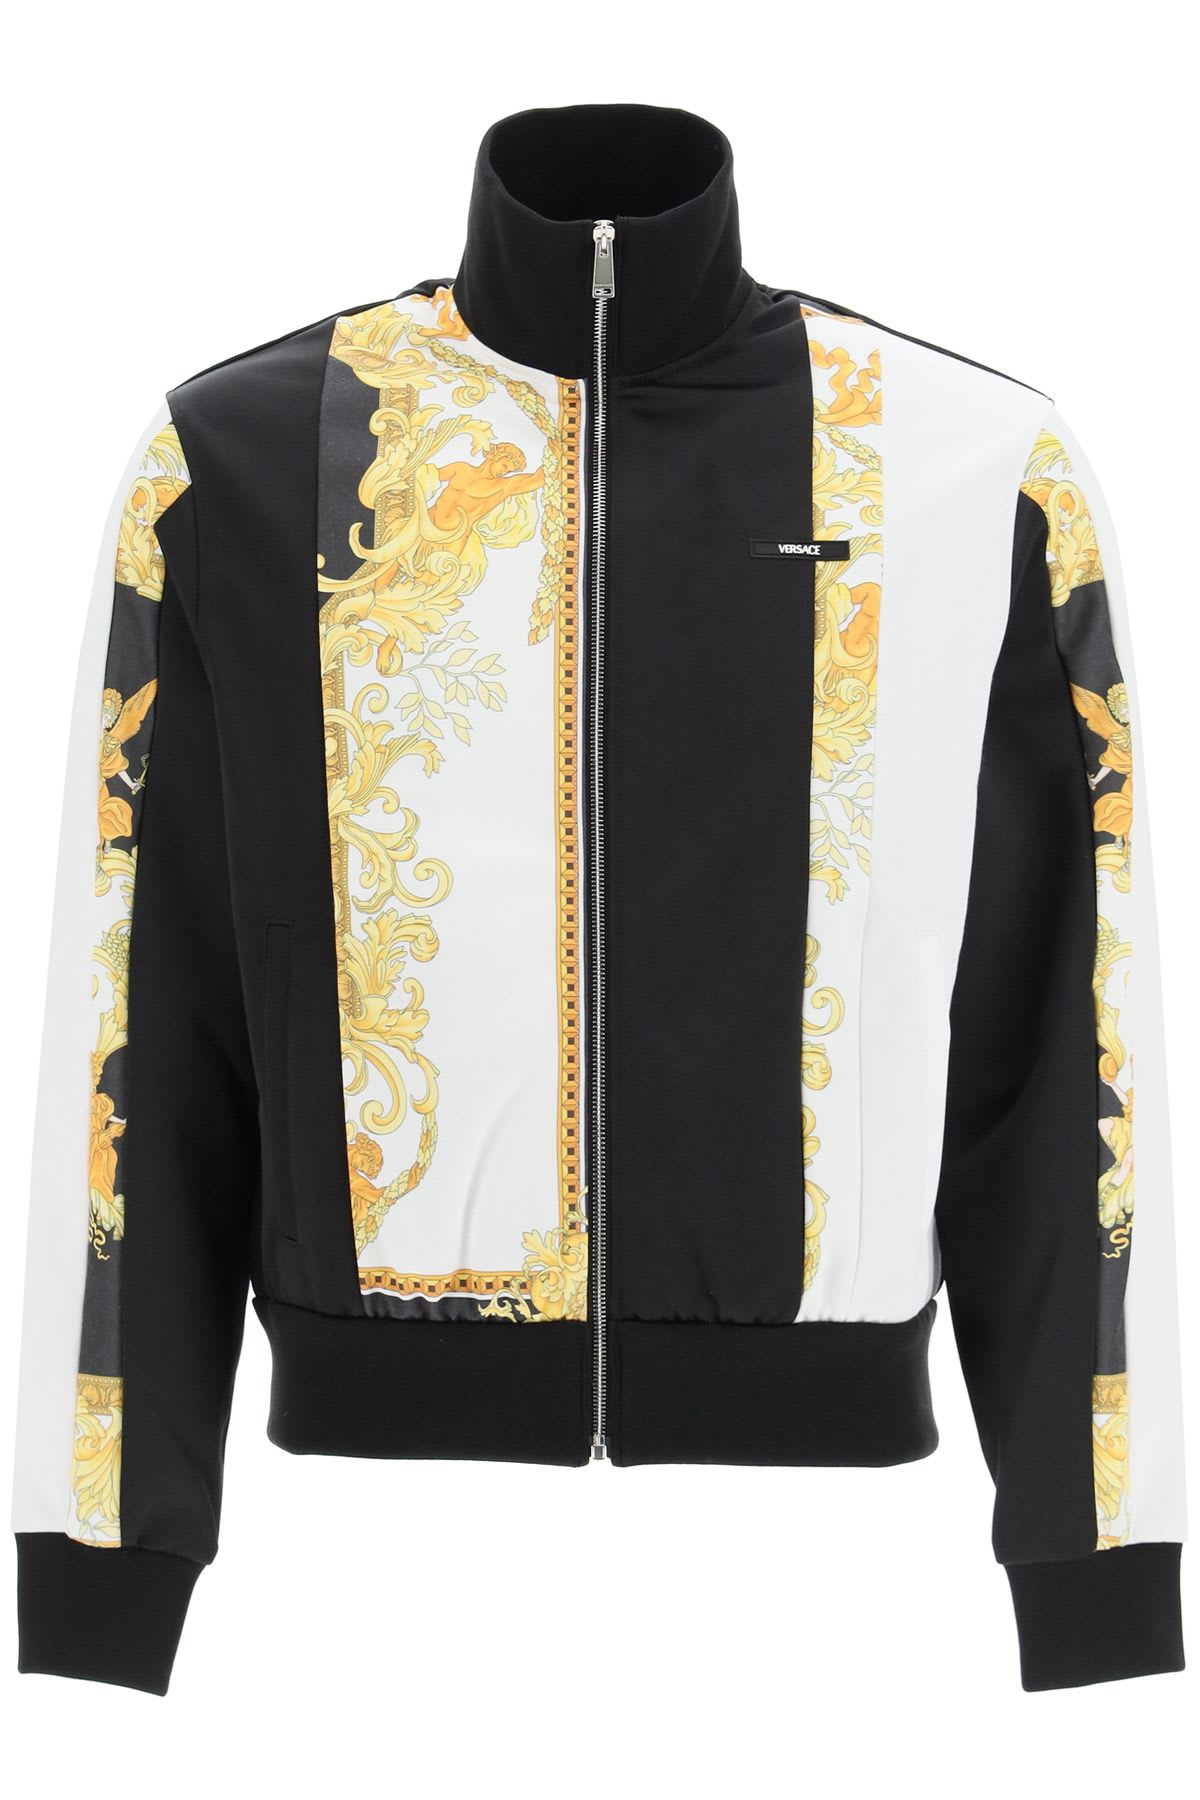 Versace Full Zip Sweatshirt With Baroque Print